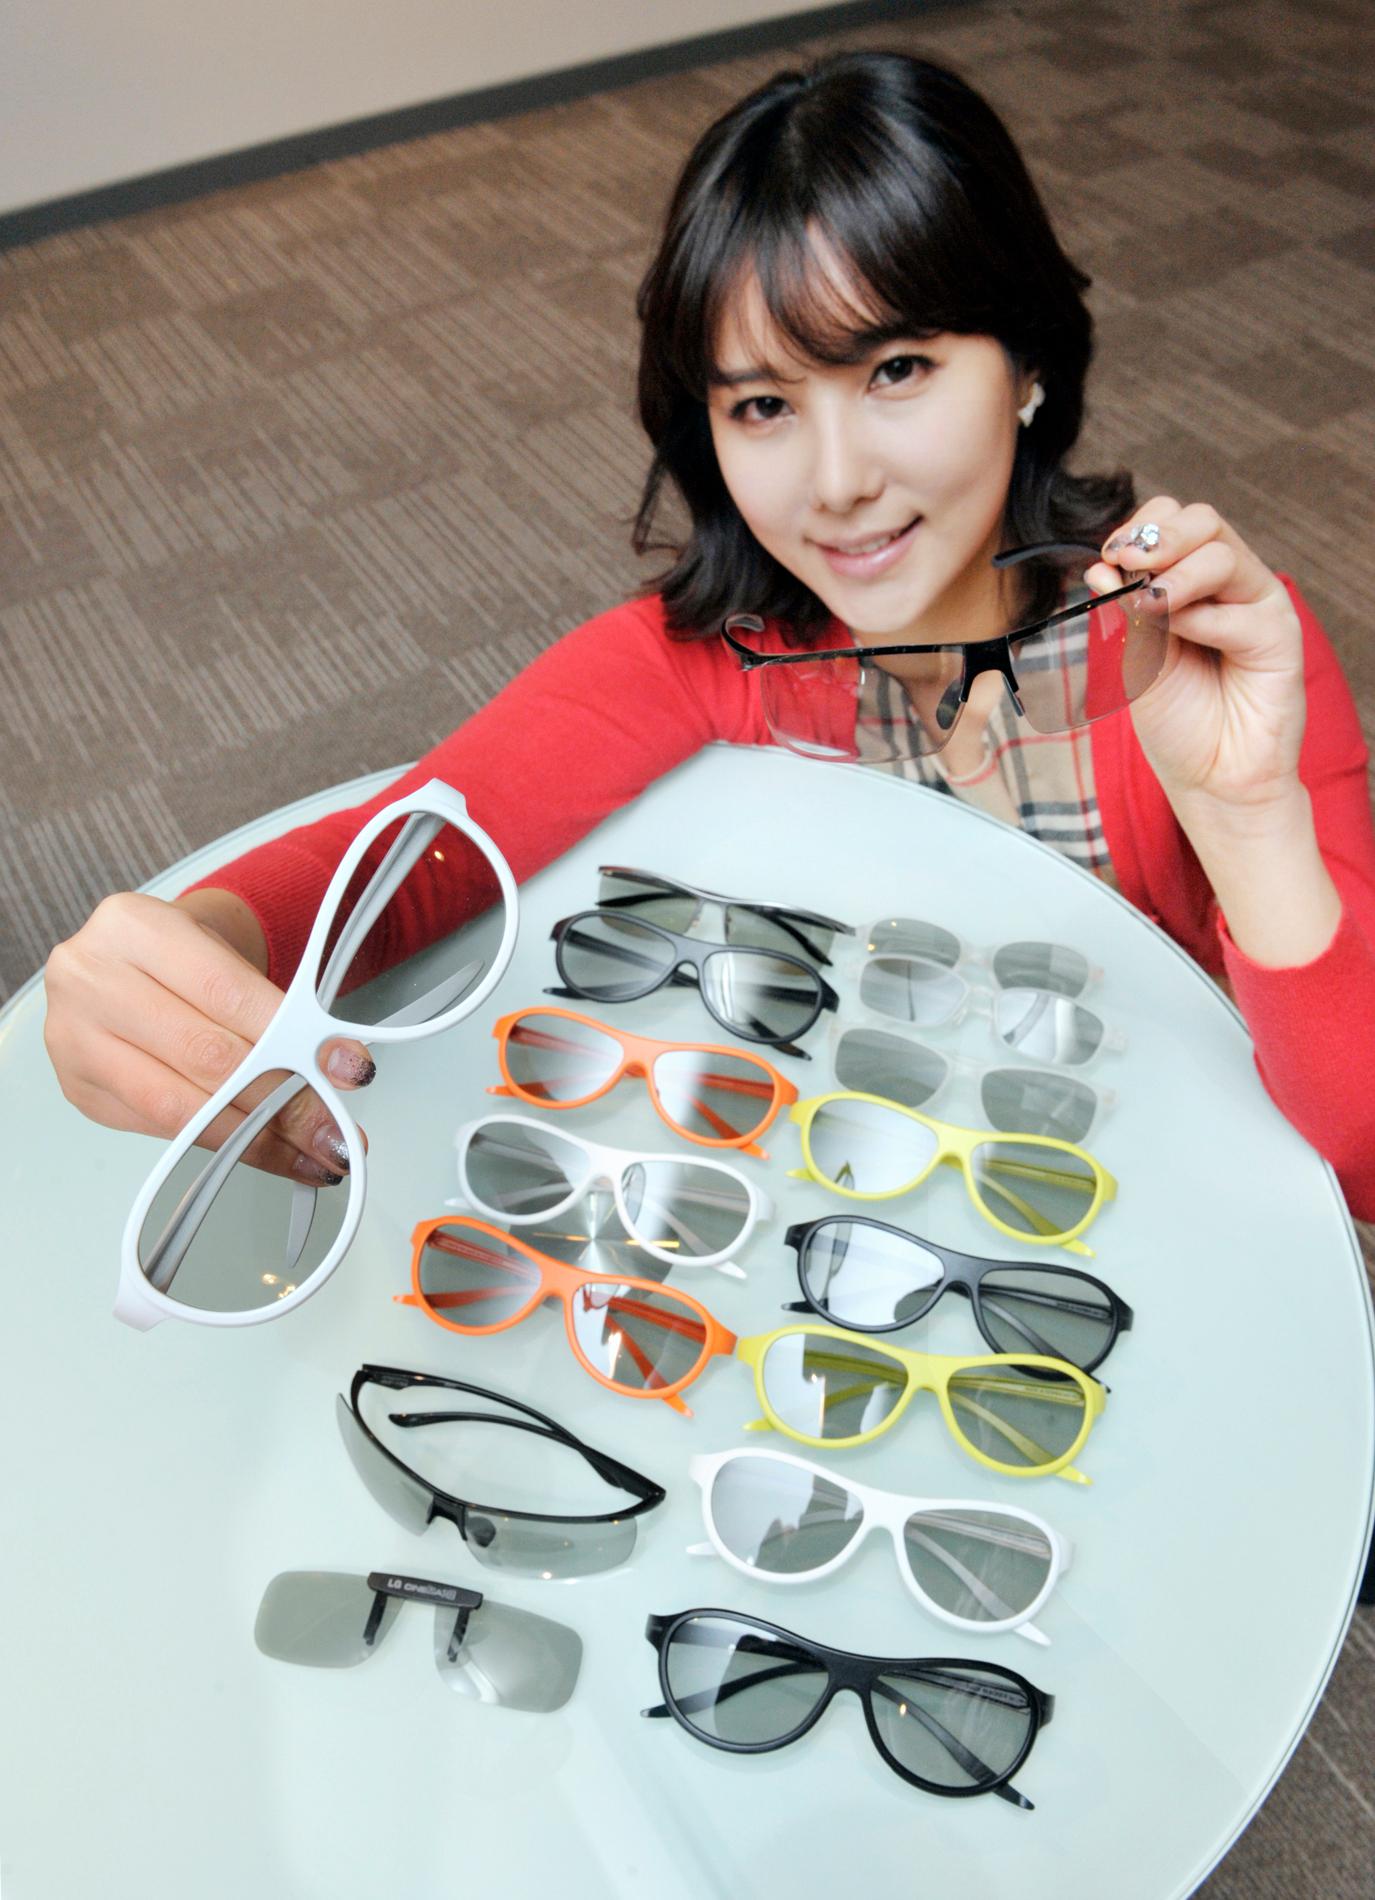 LG har samarbeidet med brilledesigneren Alain Mikli, og lanserer tre nye brillemodeller i 2012.